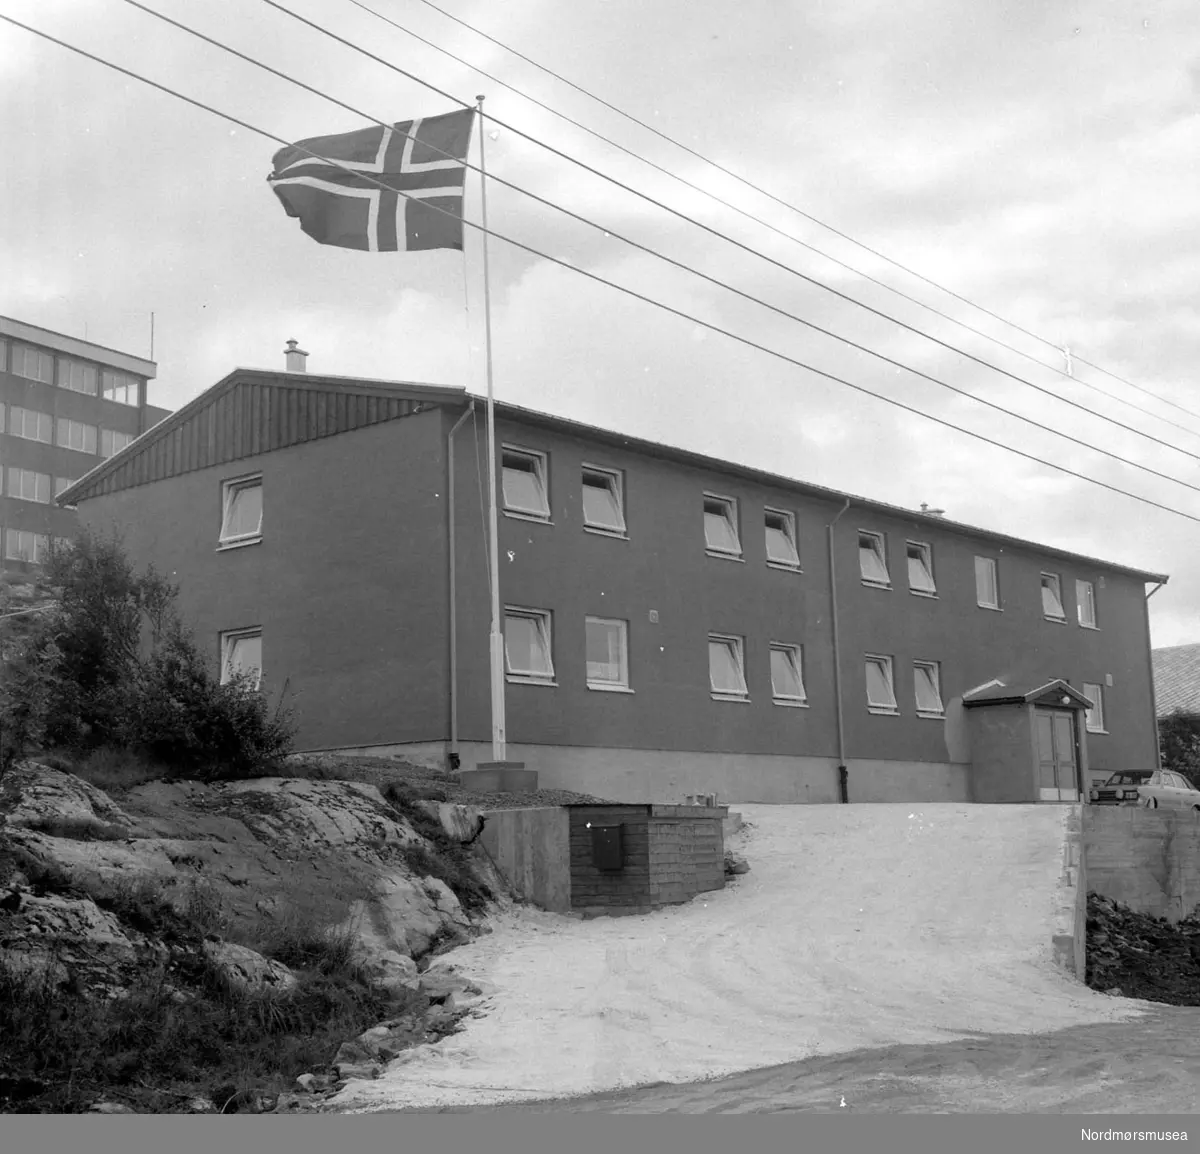 Foto trolig fra et nybygd hybelhus i Kristiansund. Repotasjebilde, 
Romsdalspostens arkiv. Fra Nordmøre Museums fotosamlinger.